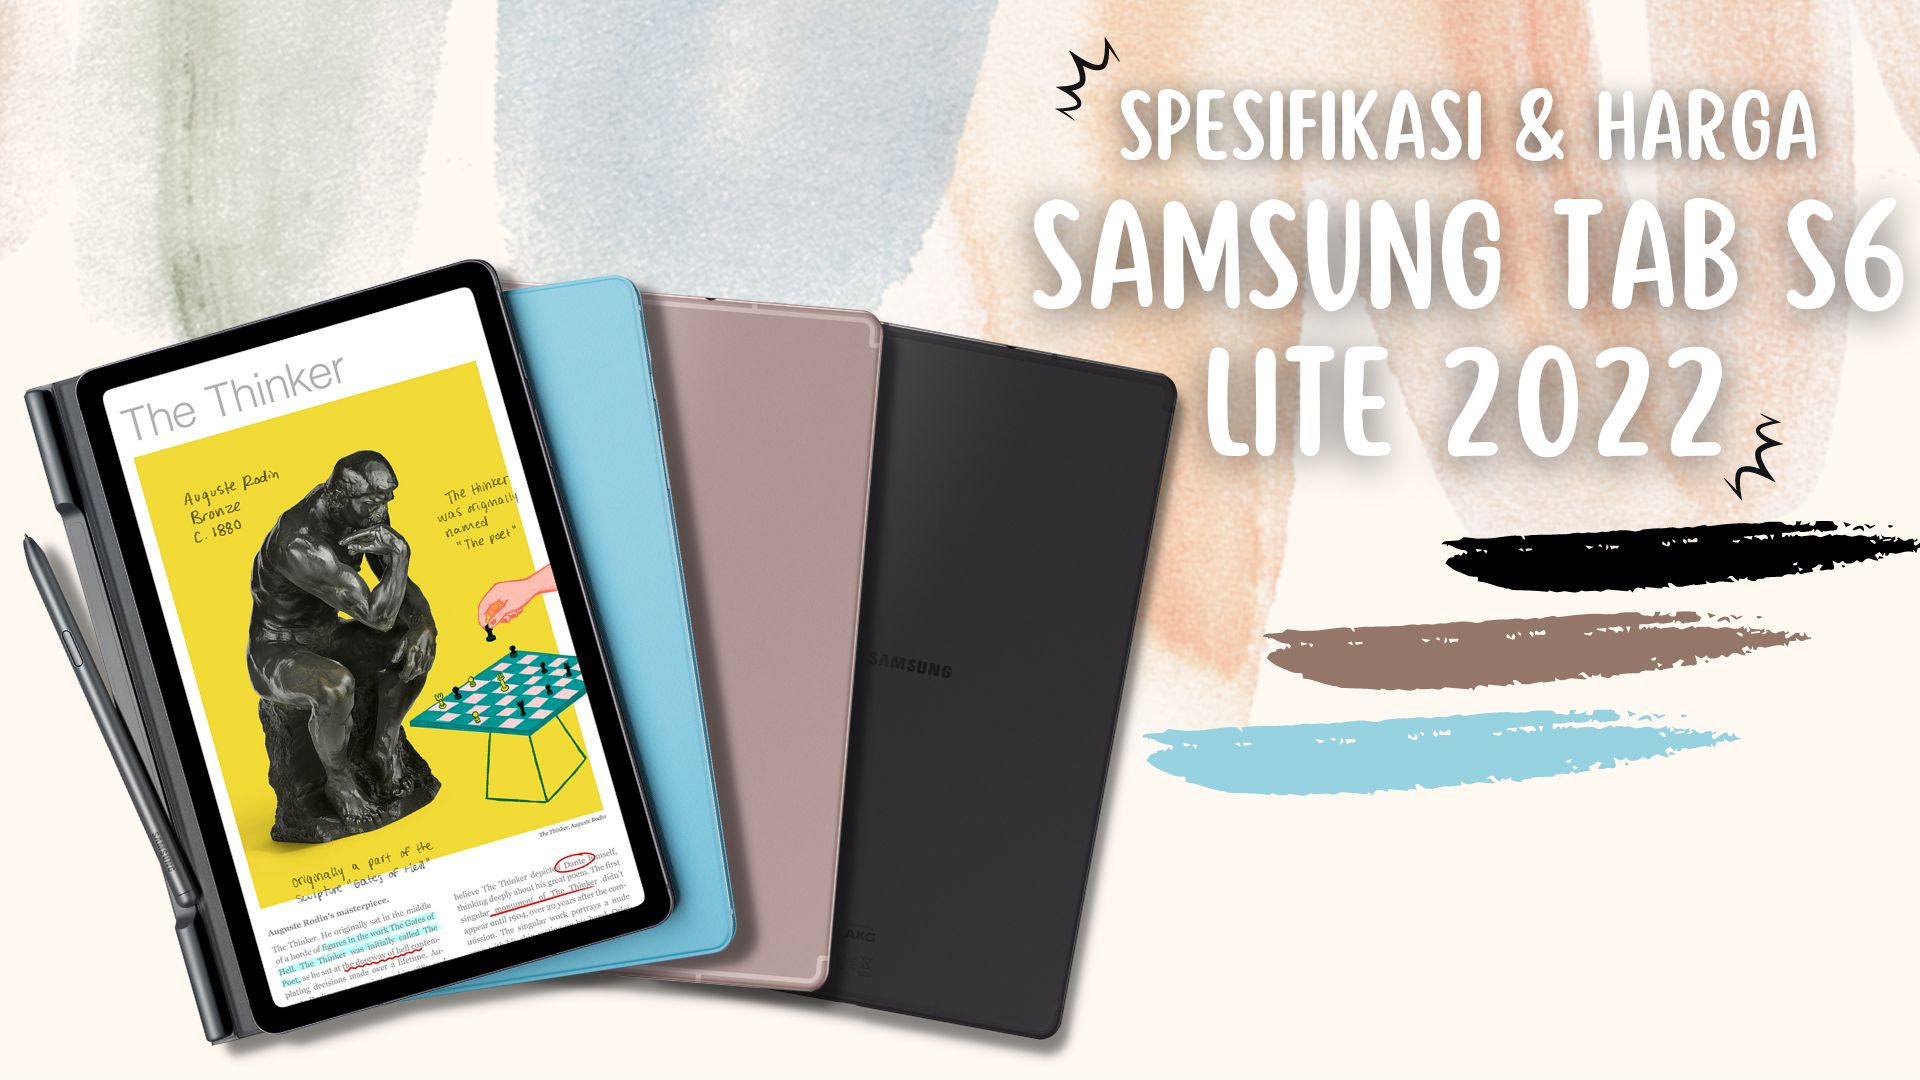 Spesifikasi dan Harga Tablet Samsung Galaxy Tab S6 Lite 2022 di Indonesia